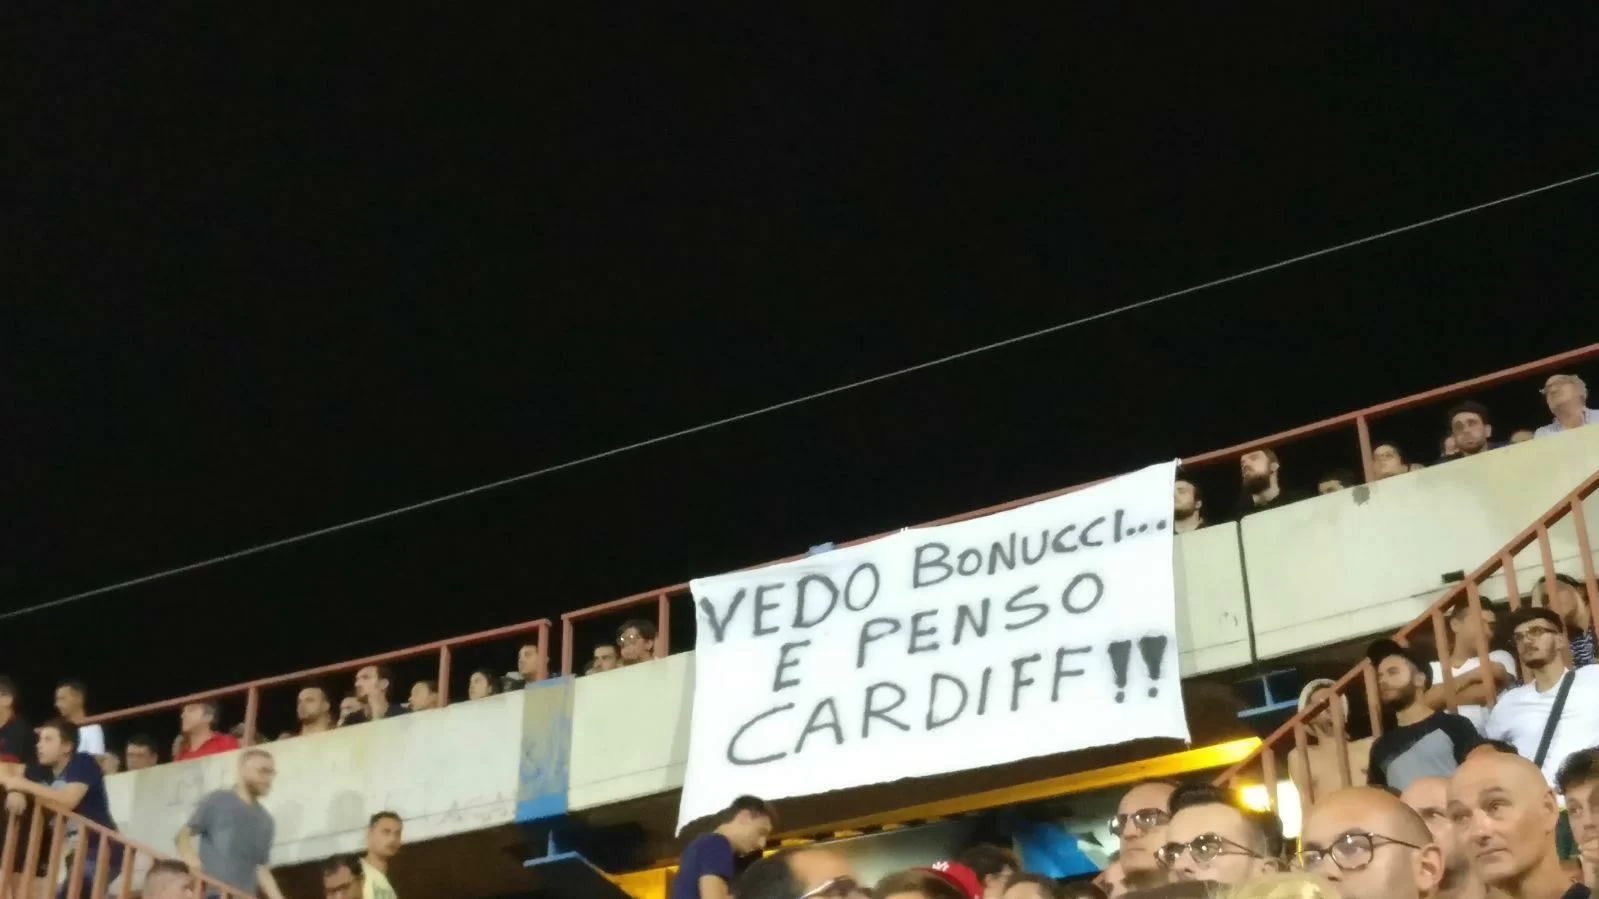 Dal Massimino, sfottò dei tifosi: “Vedo Bonucci e penso Cardiff!”